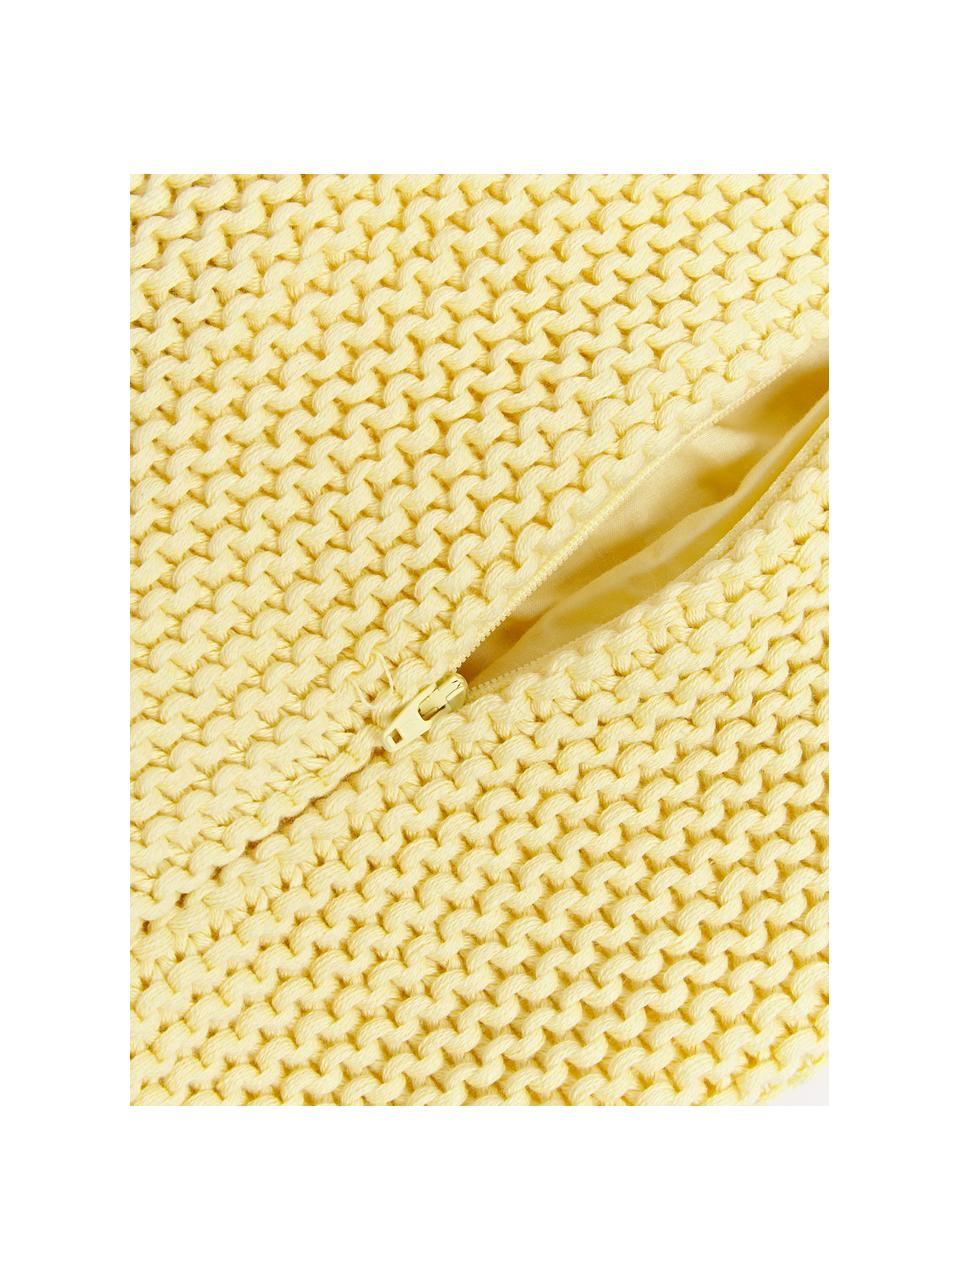 Copricuscino a maglia in cotone organico Adalyn, 100% cotone biologico, certificato GOTS, Giallo chiaro, Larg. 40 x Lung. 40 cm